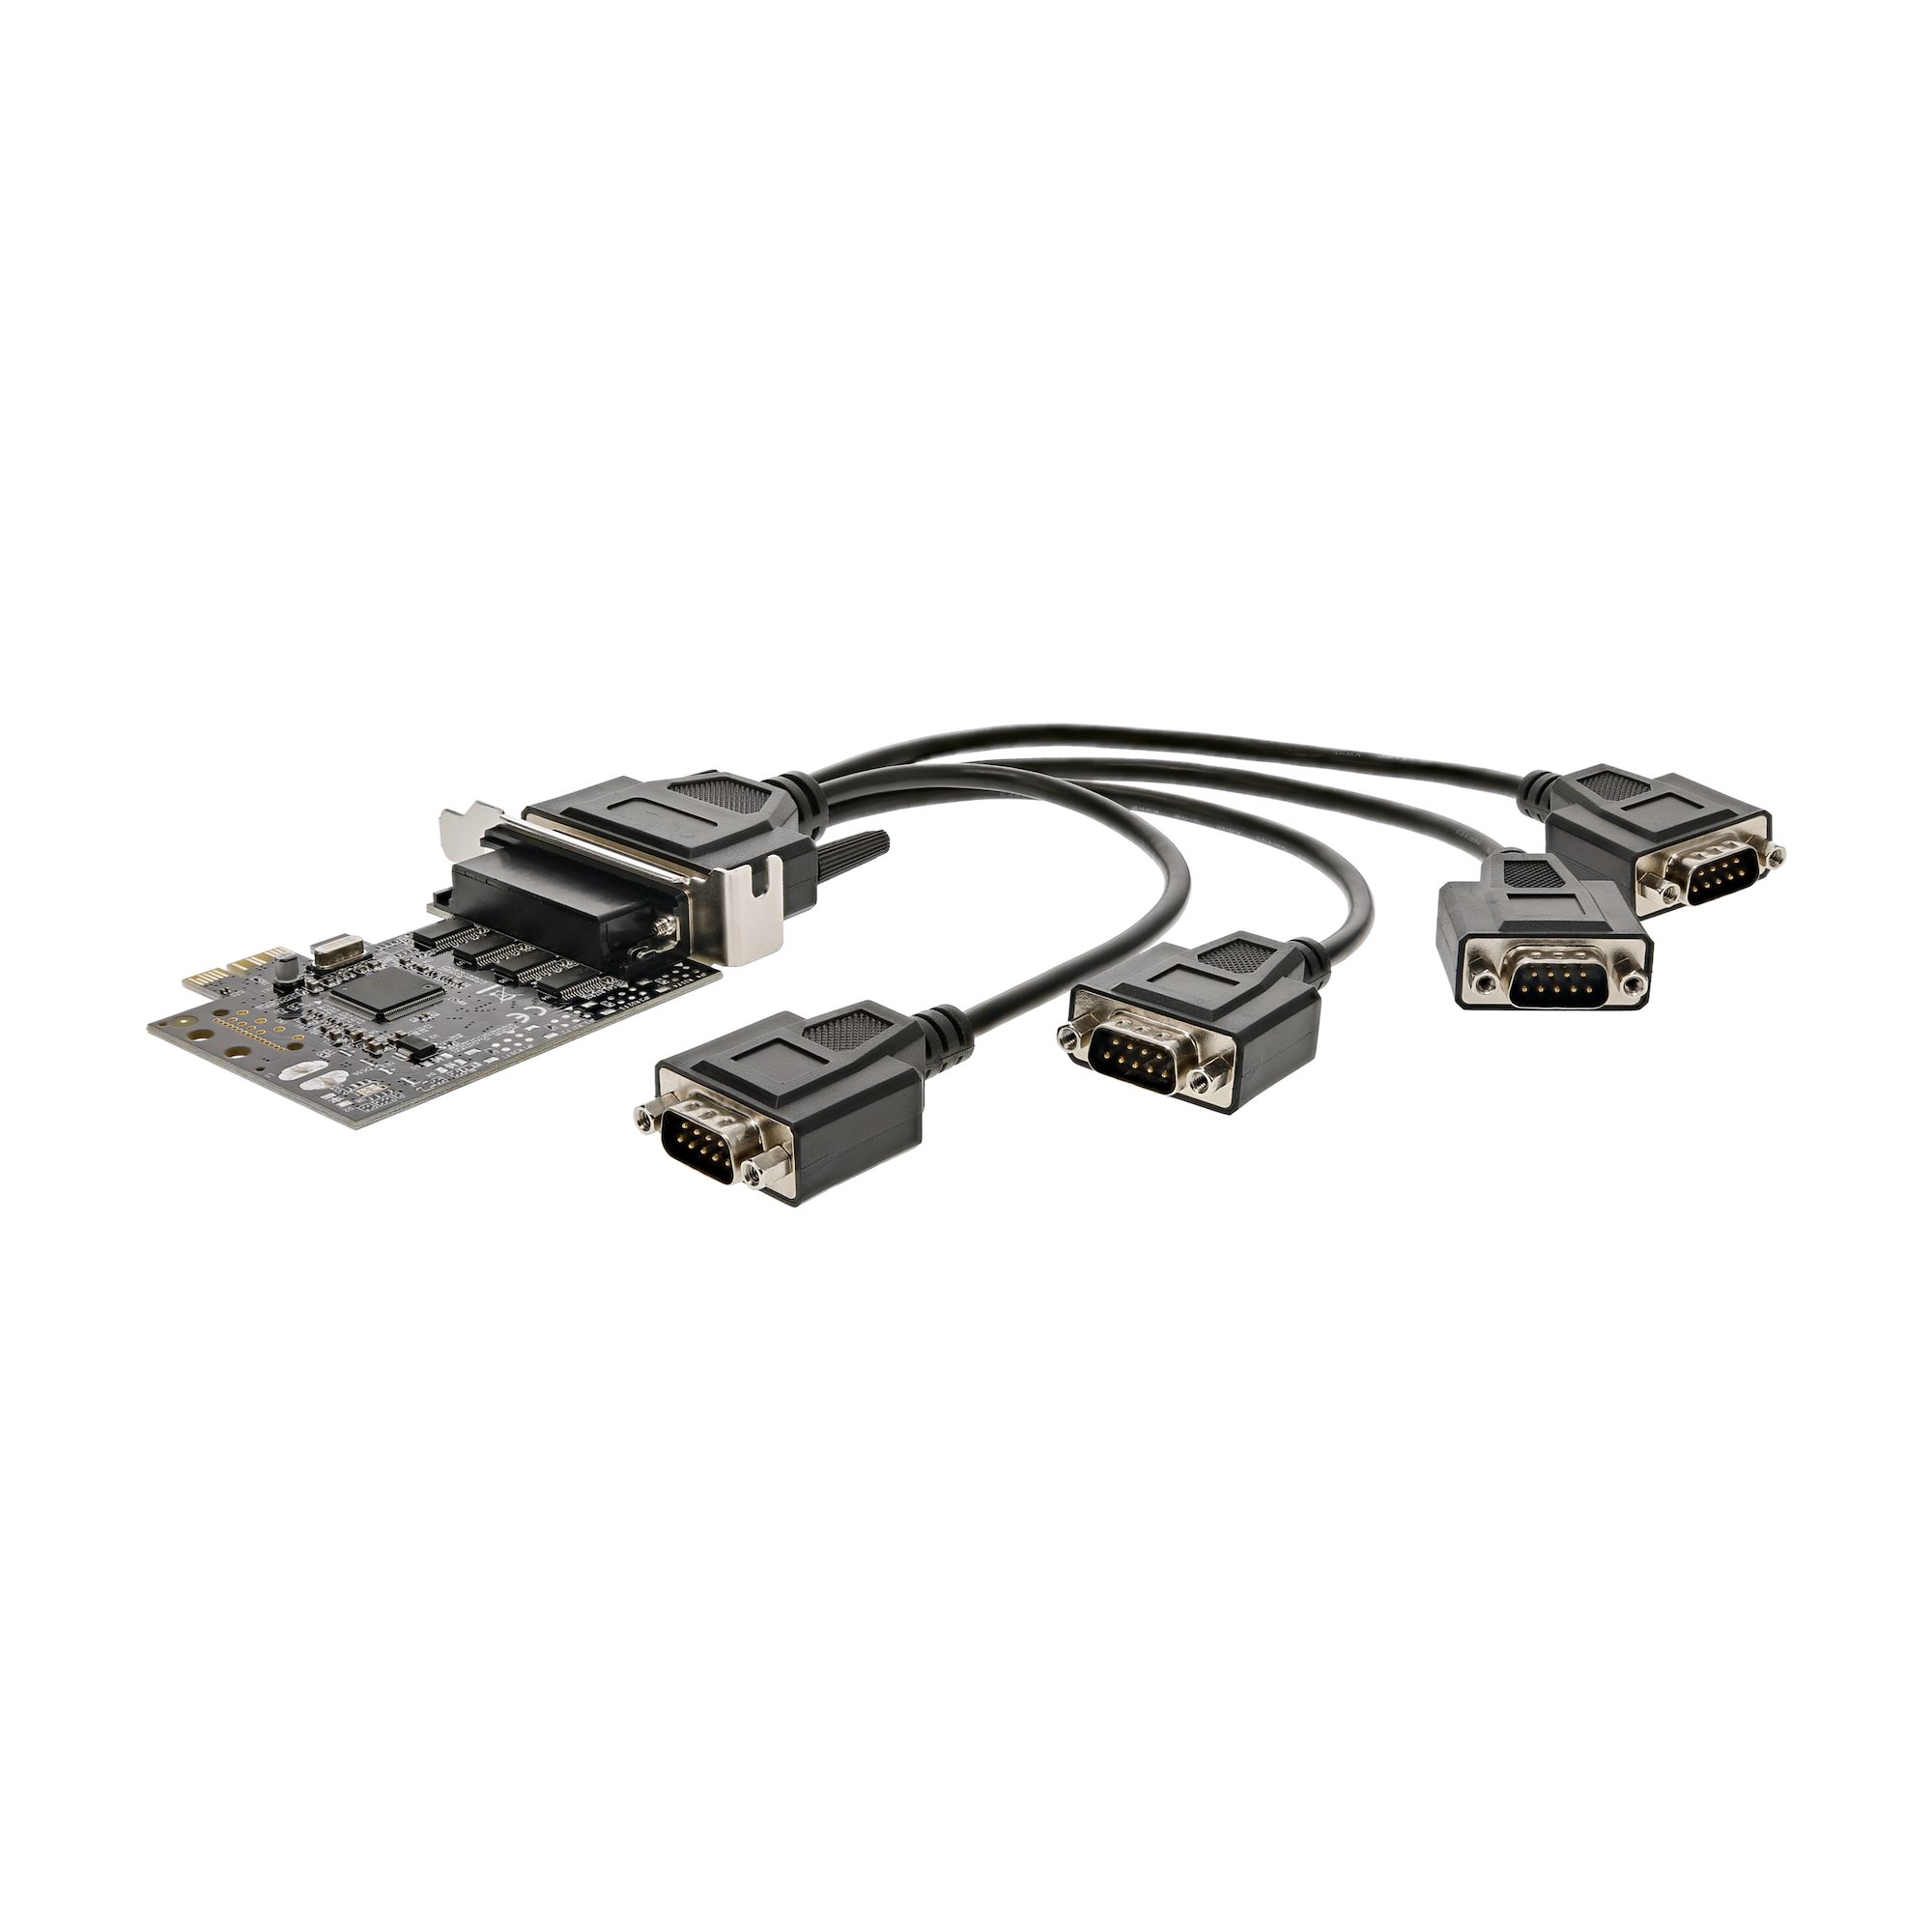 シリアルRS232C 4ポート増設PCI Expressインターフェースカード